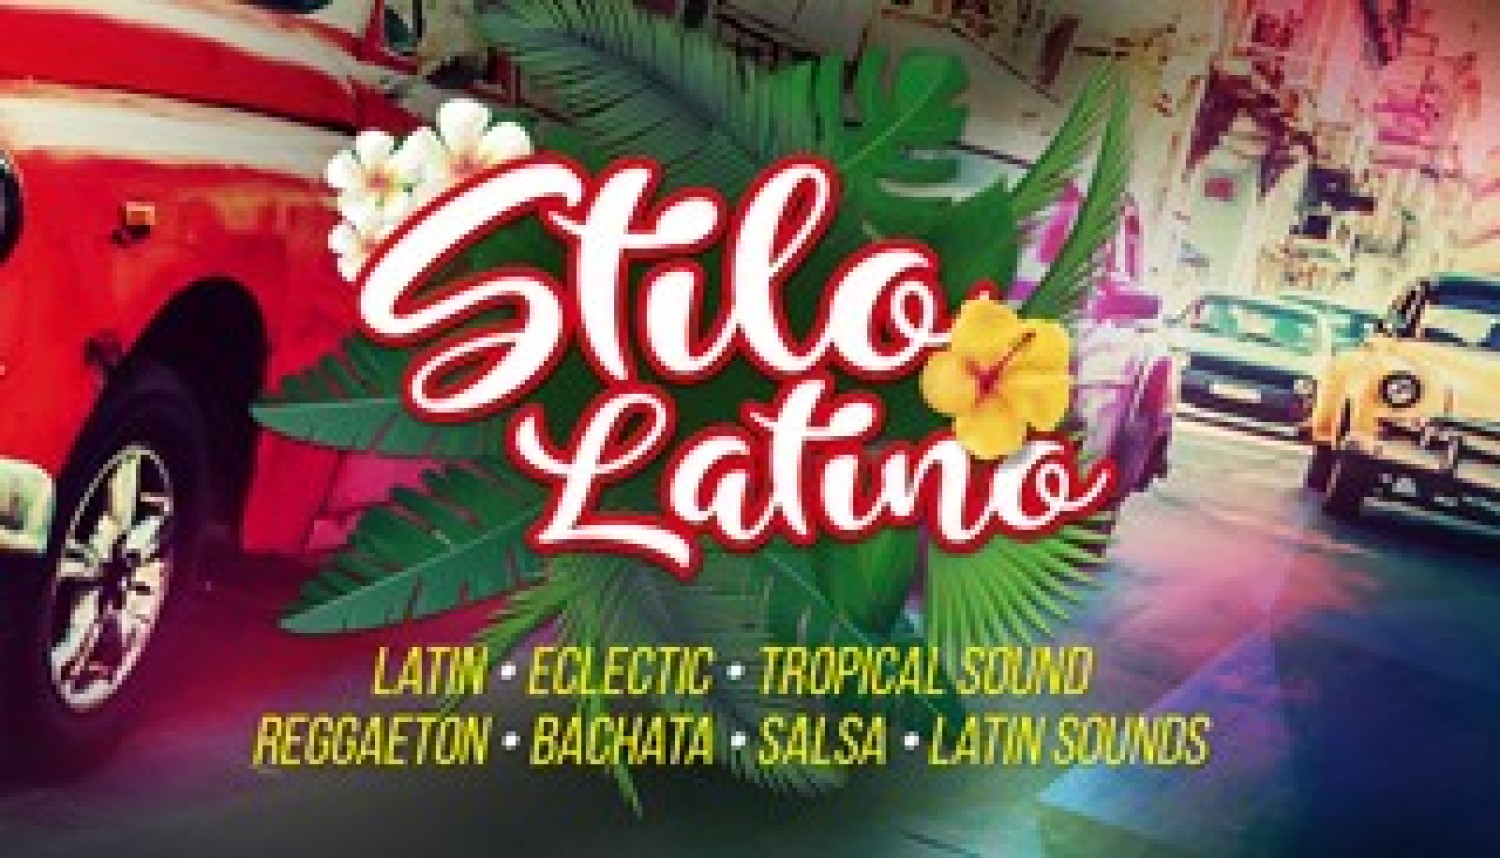 Party nieuws: Stilo Latino: grootste Latin indoor even van Nederland